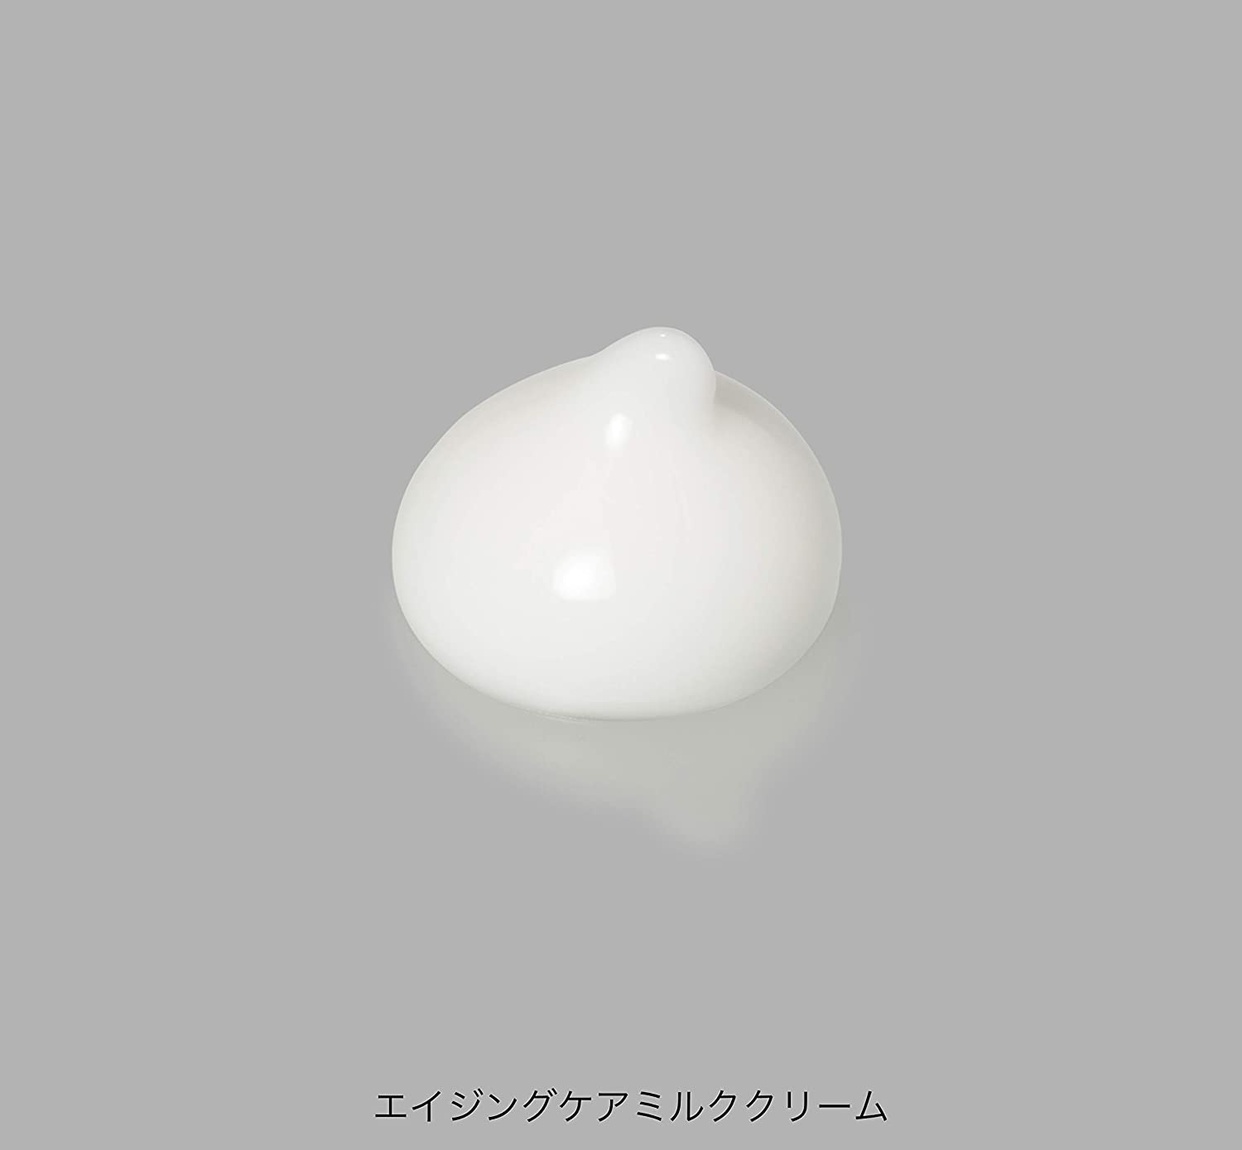 MINON(ミノン) アミノモイスト エイジングケア ミルククリームの商品画像サムネ3 